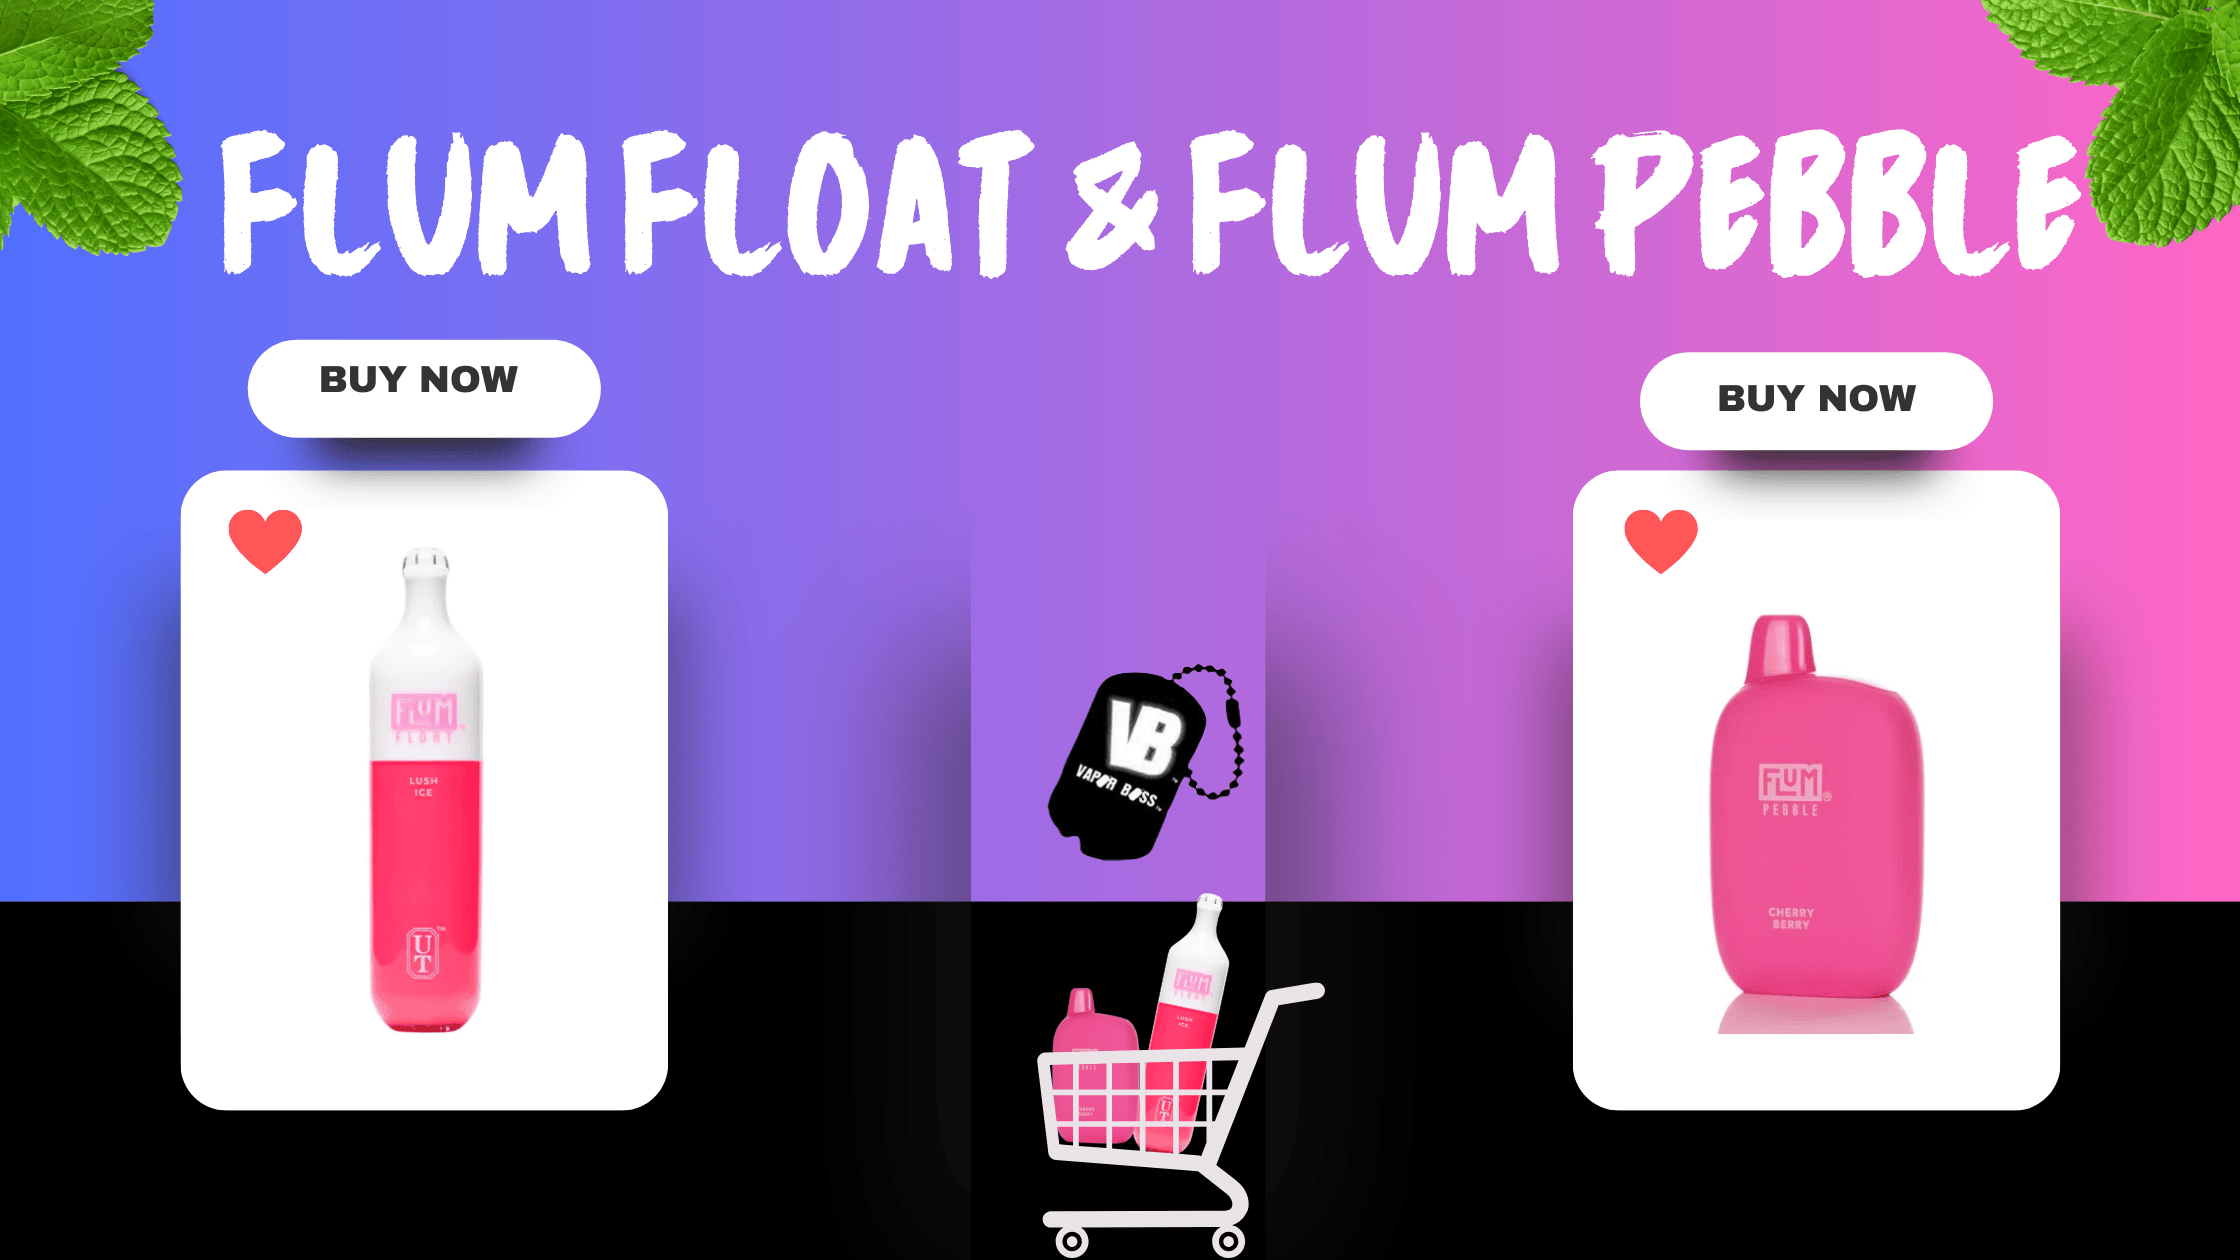 Flum Float & Flum Pebble